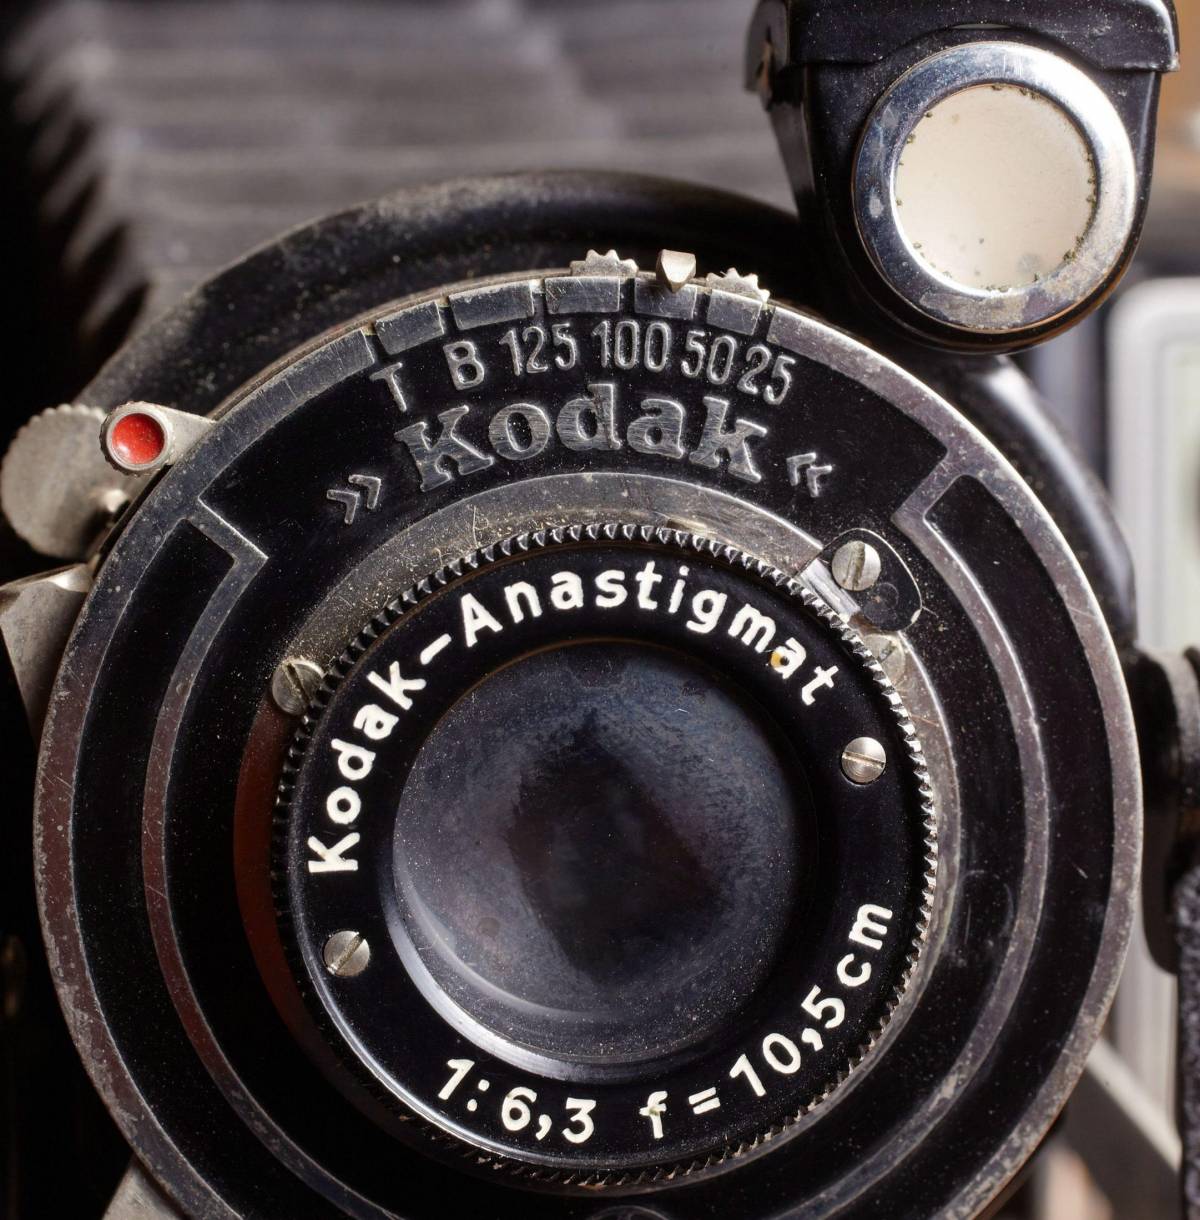 Addio alla Kodak:  ha fotografato un’epoca